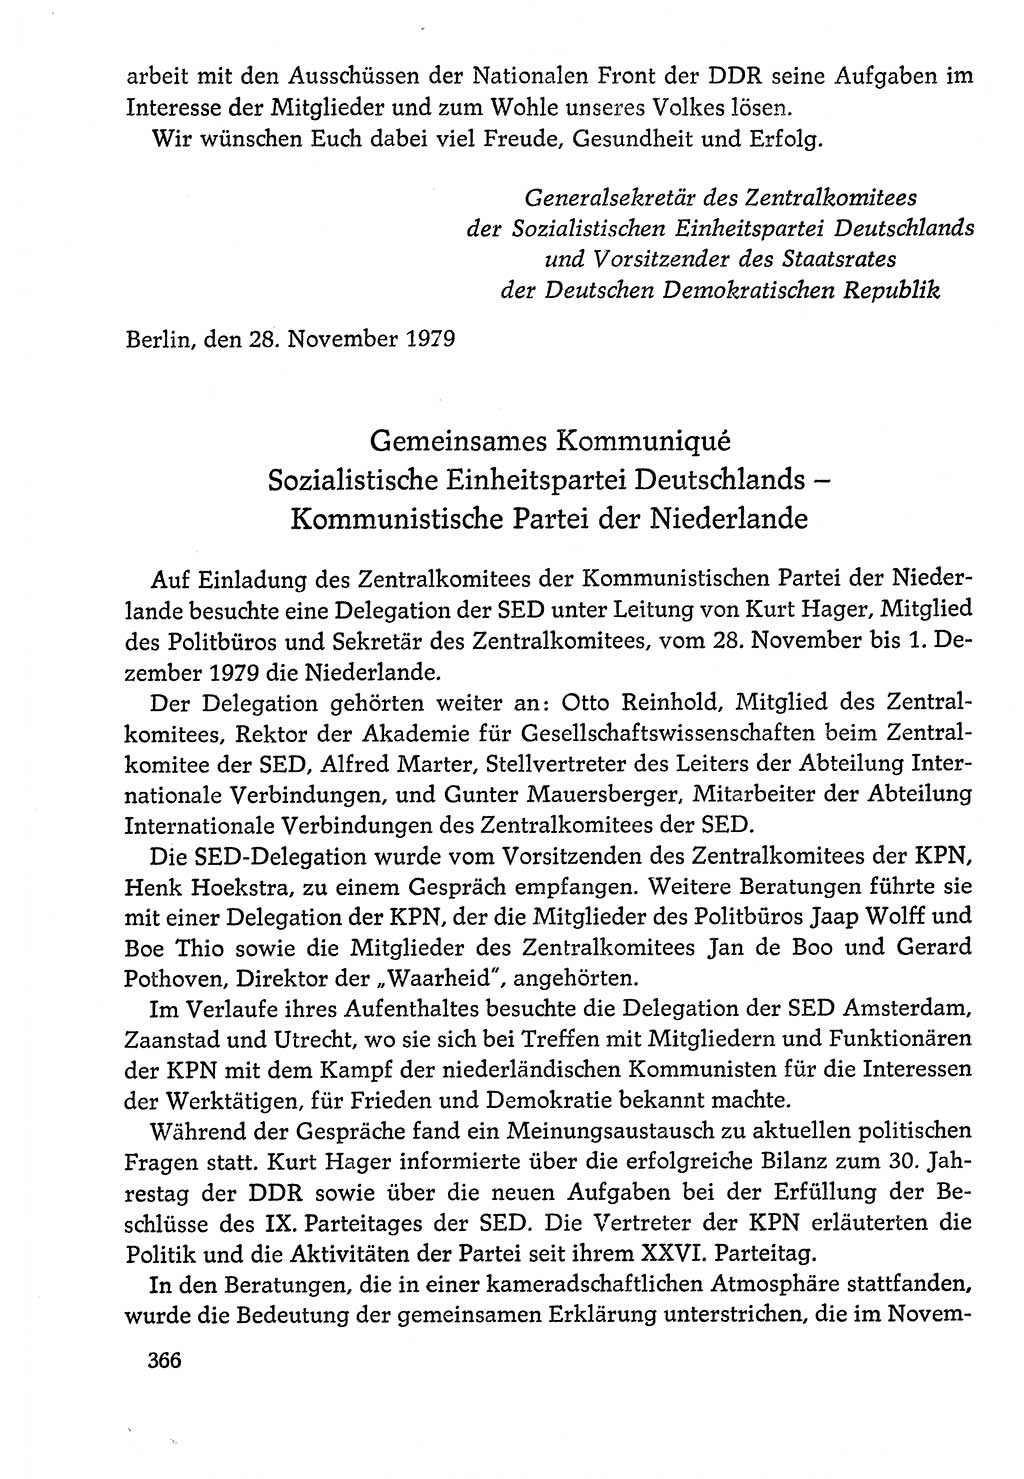 Dokumente der Sozialistischen Einheitspartei Deutschlands (SED) [Deutsche Demokratische Republik (DDR)] 1978-1979, Seite 366 (Dok. SED DDR 1978-1979, S. 366)